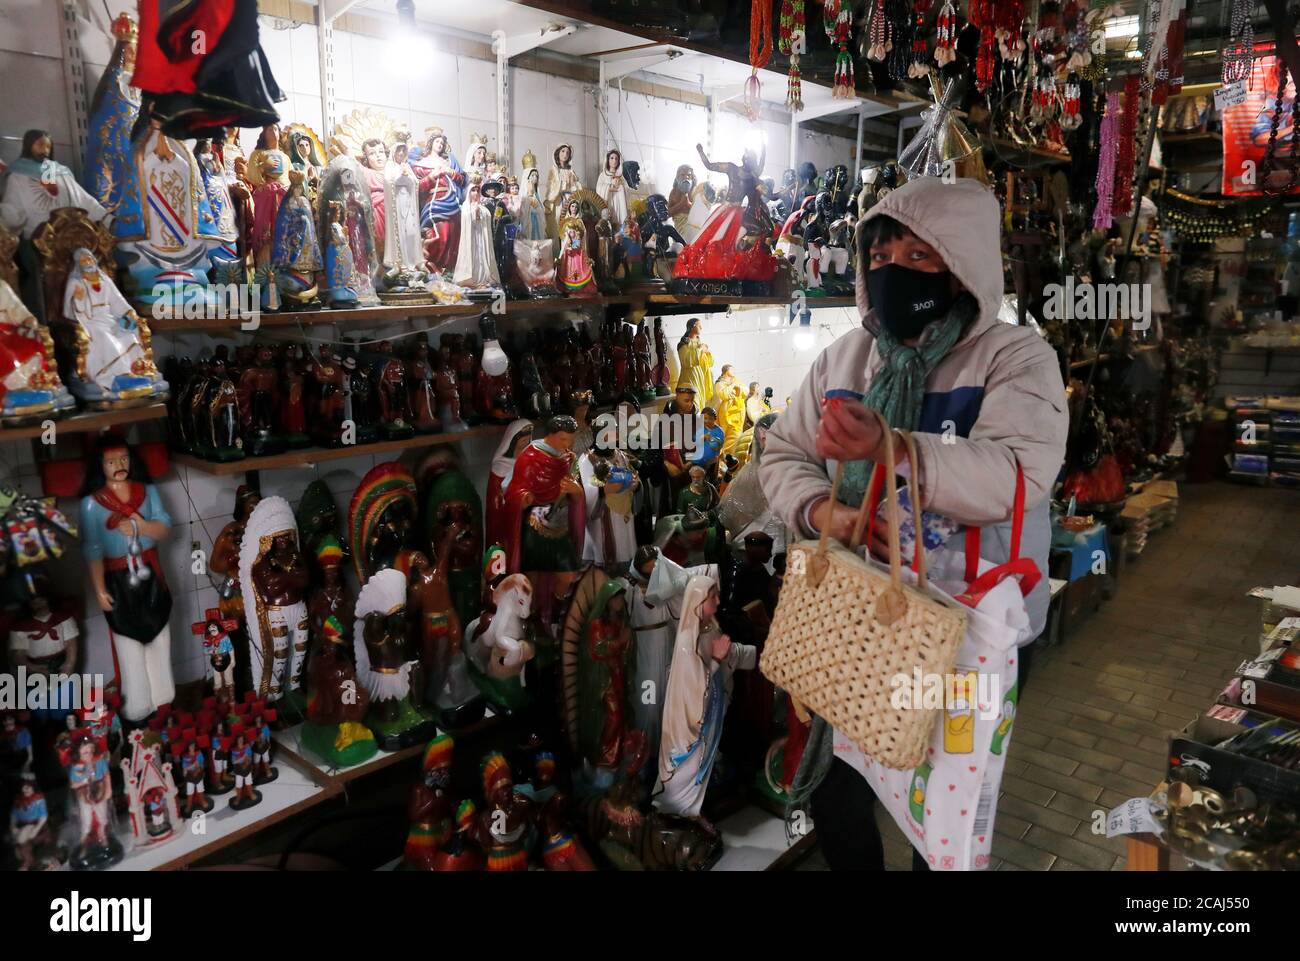 Una mujer compra en una tienda que vende artículos religiosos católicos  fuera de la iglesia de San Cayetano (San Cajetán), patrona del trabajo y el  pan, durante su día de fiesta, en